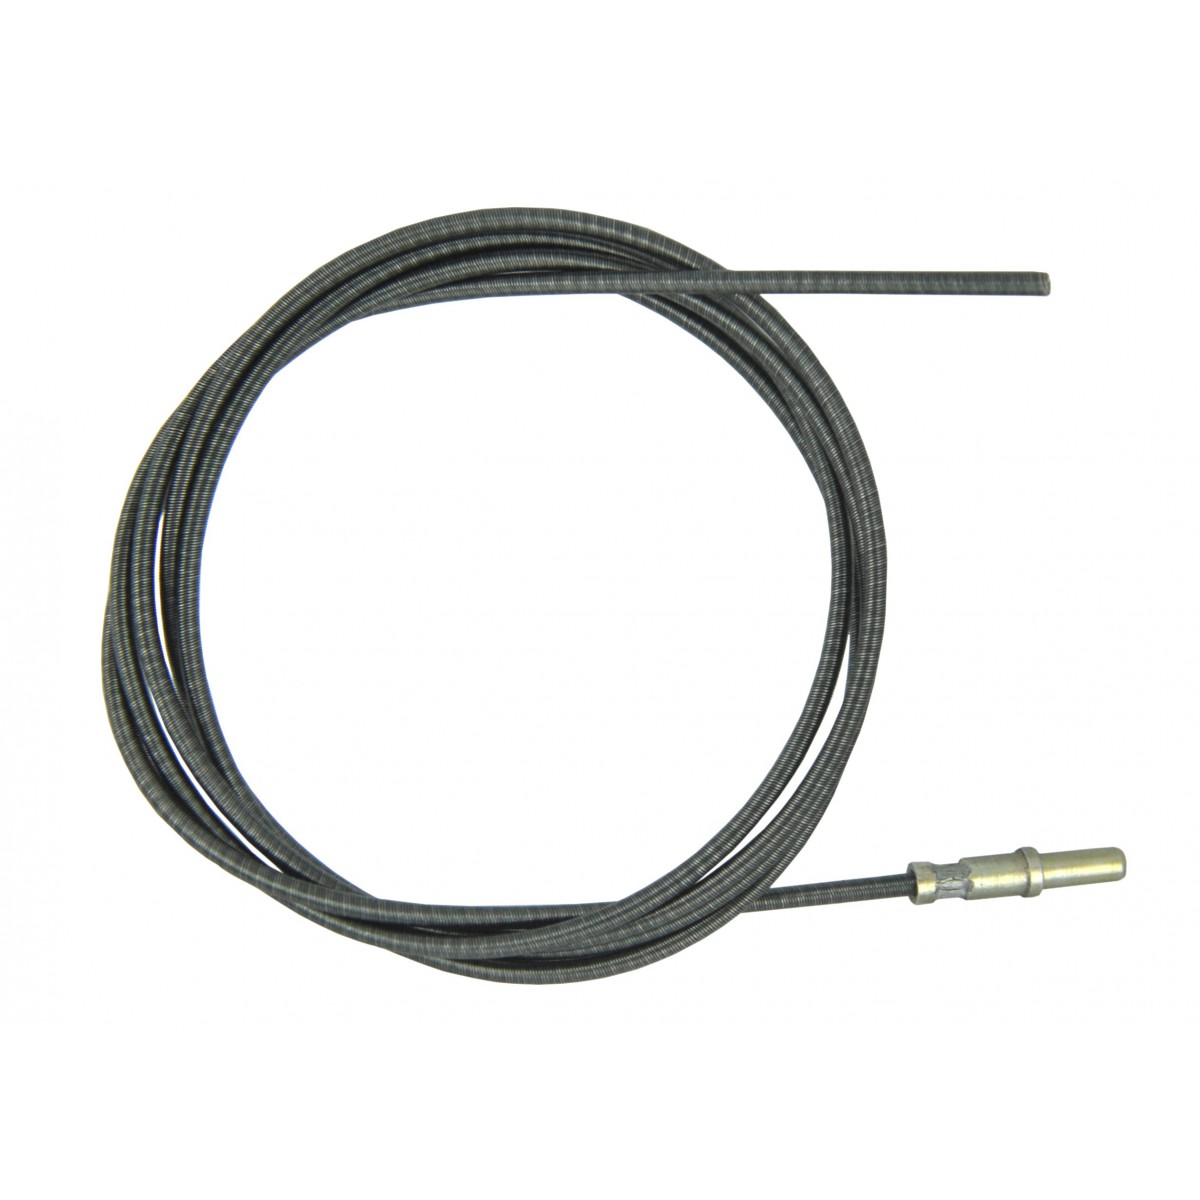 Cable de tacómetro de 1500 mm Tacómetro Iseki sin armadura, inserto de cable